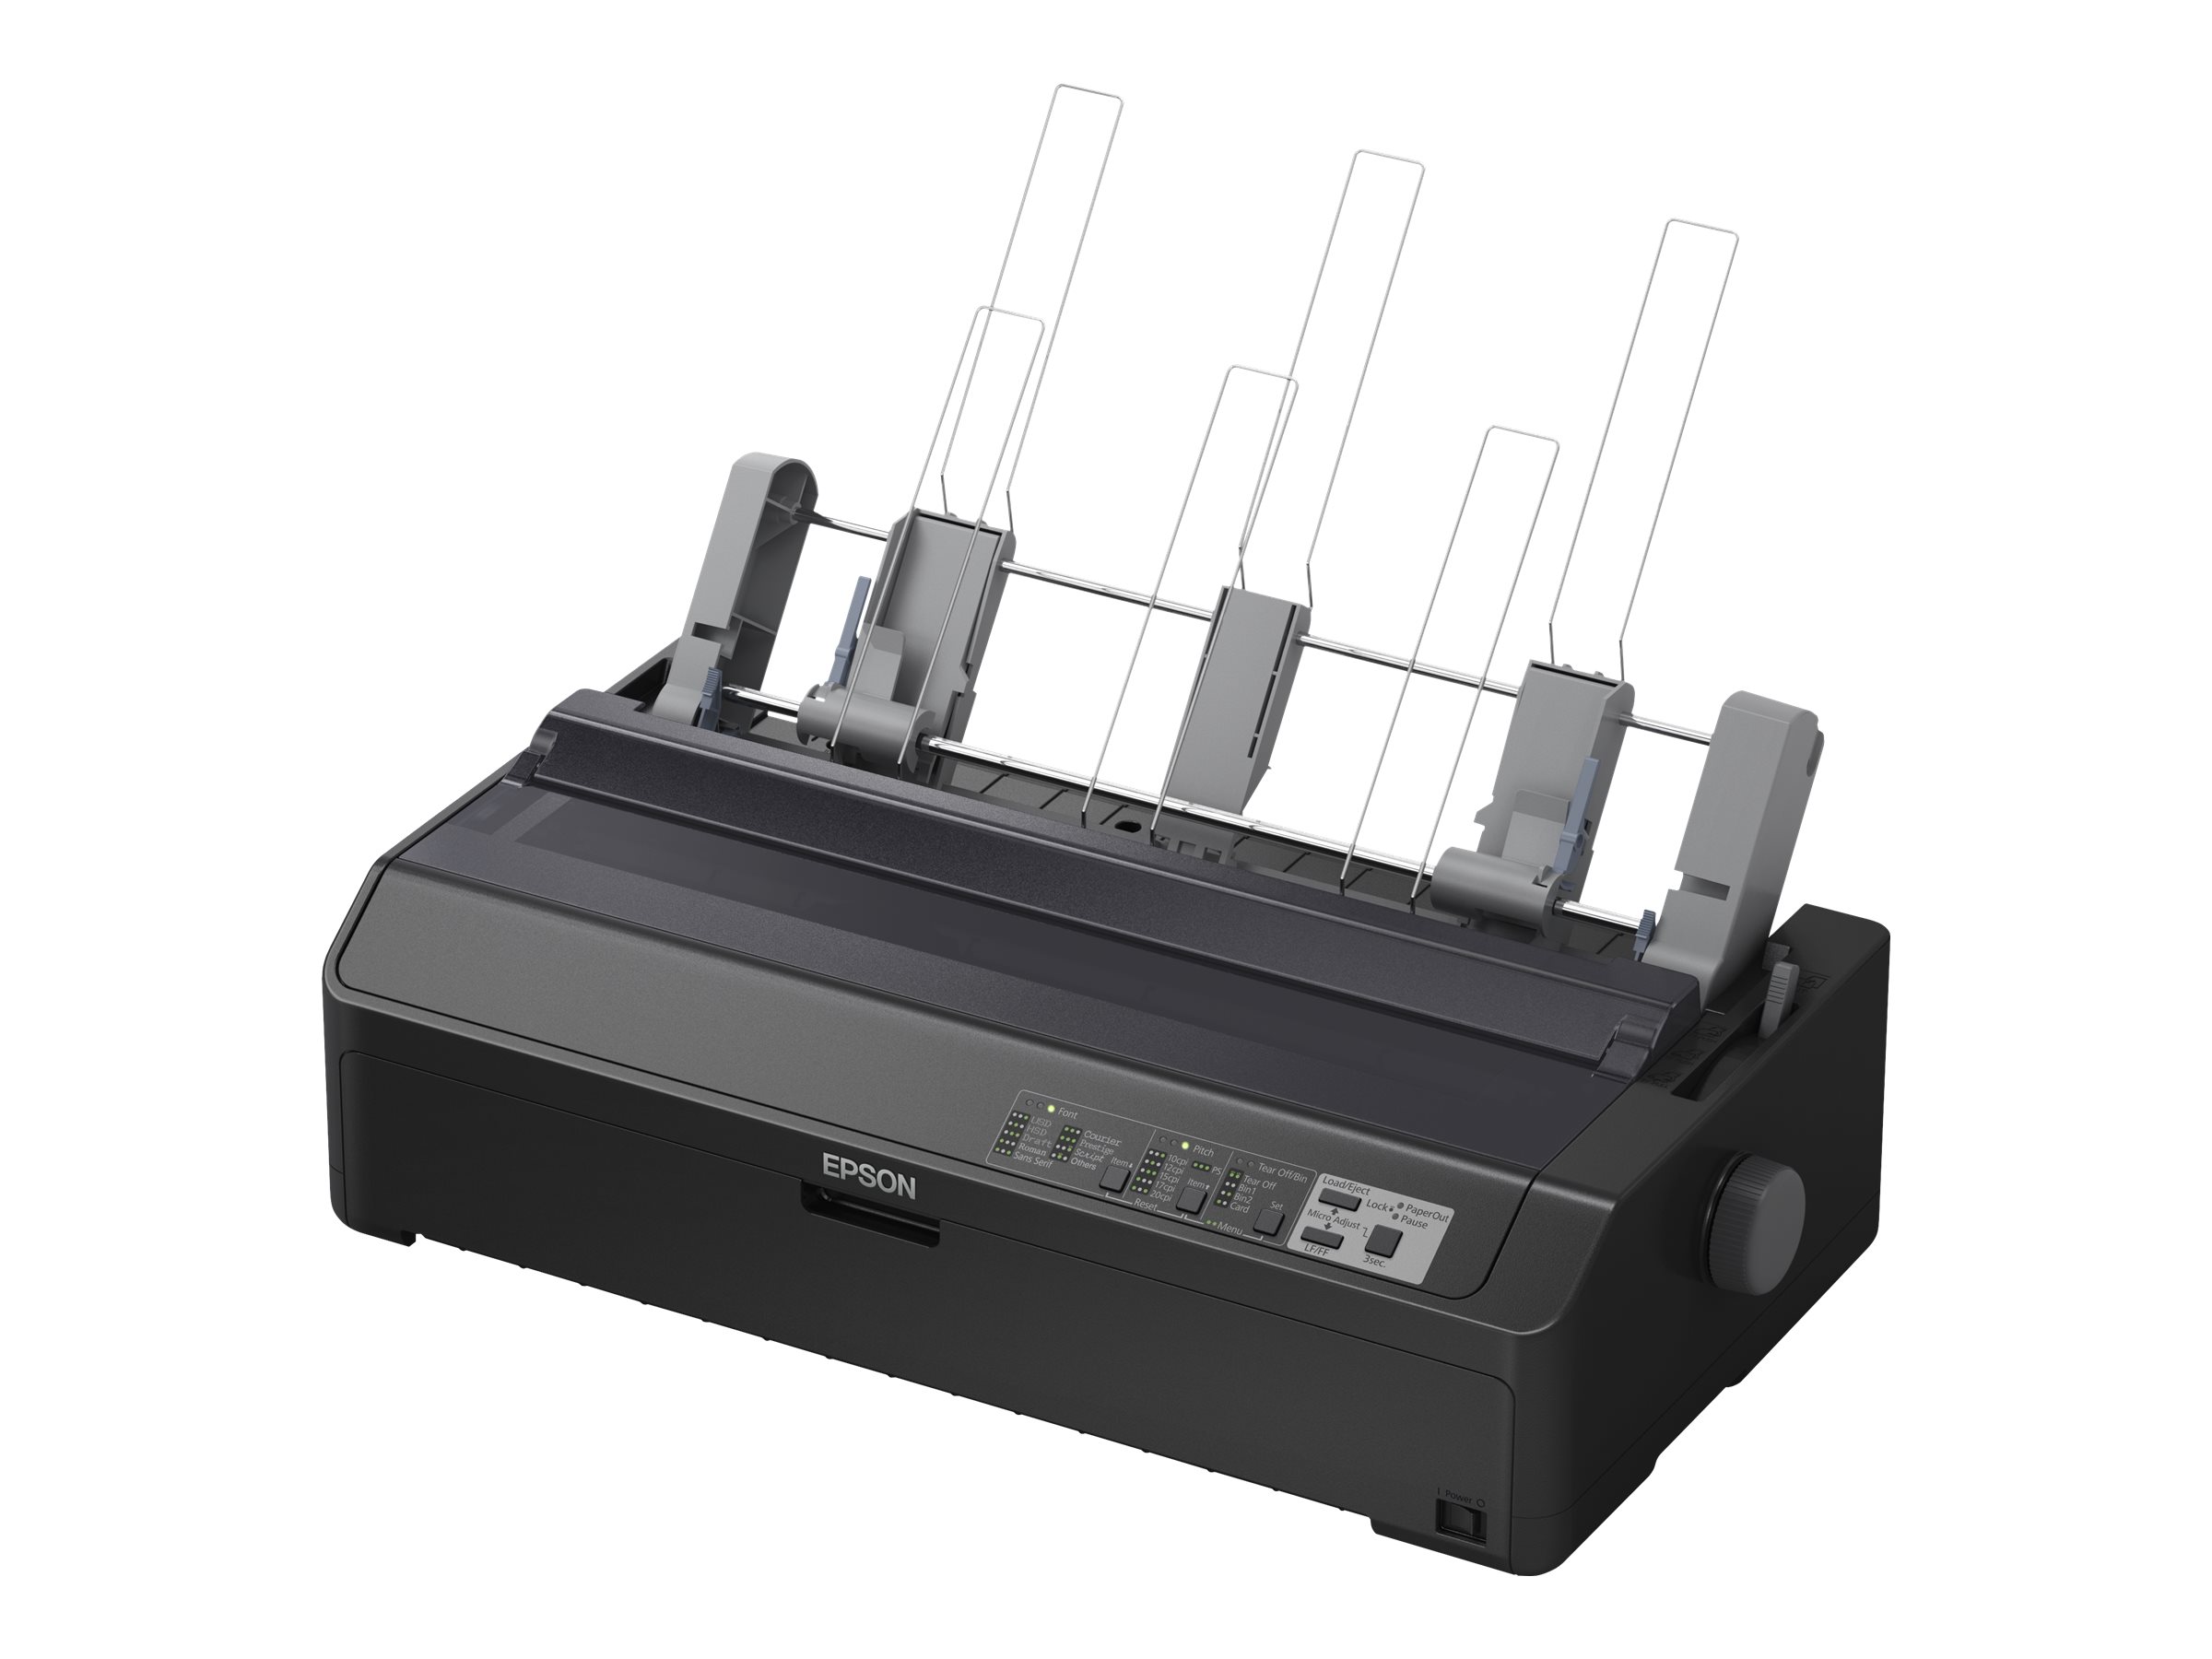 Epson LQ 2090II - Imprimante - Noir et blanc - matricielle - Rouleau (21,6 cm), 406,4 mm (largeur), 420 x 364 mm - 360 x 180 dpi - 24 pin - jusqu'à 584 car/sec - parallèle, USB 2.0 - C11CF40401 - Imprimantes matricielles